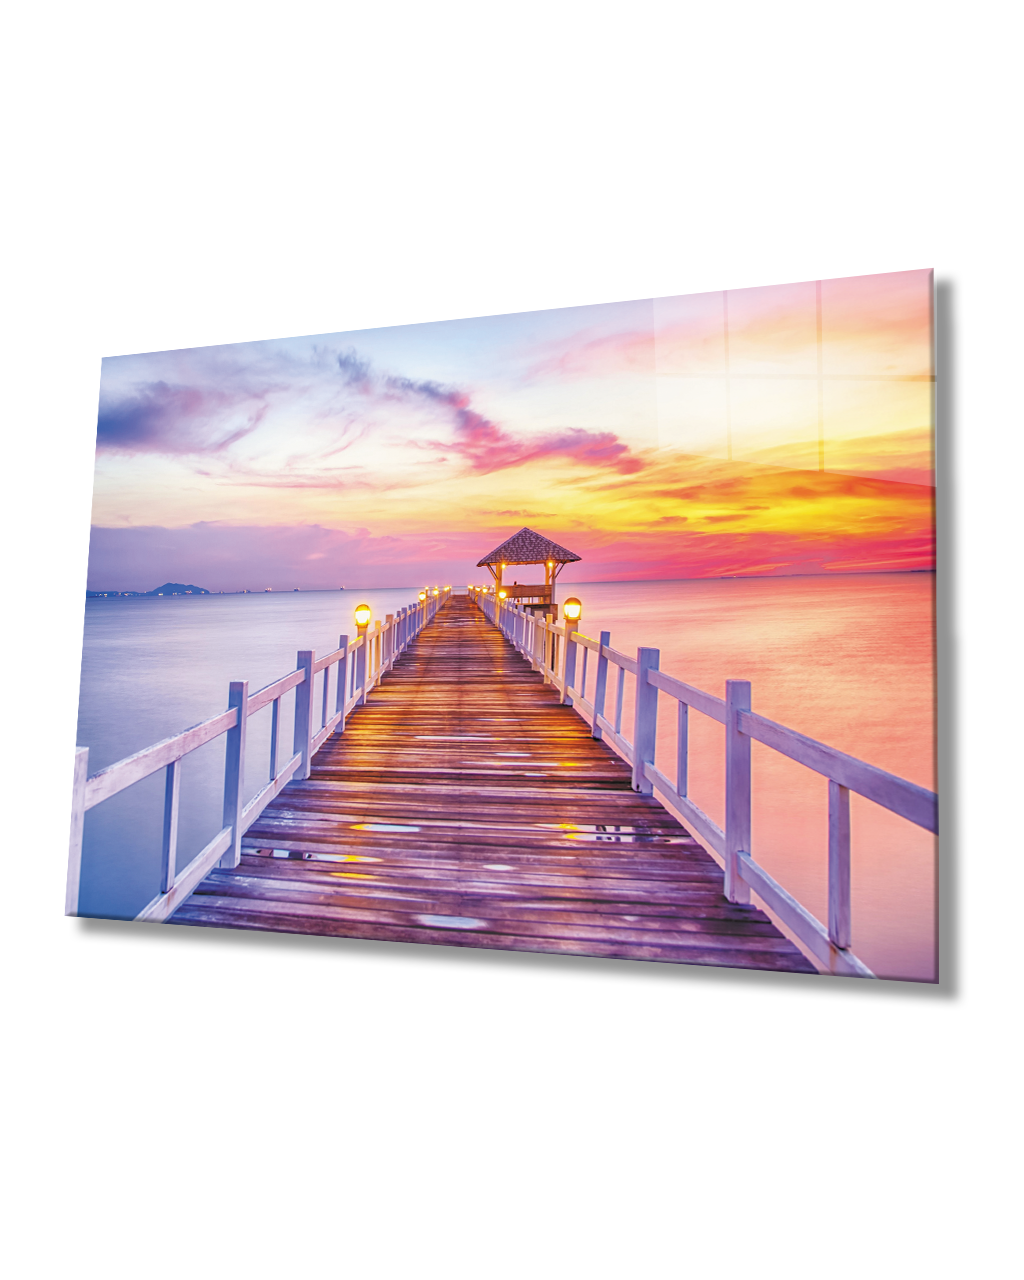 Gün Batımı Deniz İskele Cam Tablo  4mm Dayanıklı Temperli Cam Sunset Sea Pier Glass Table 4mm Durable Tempered Glass